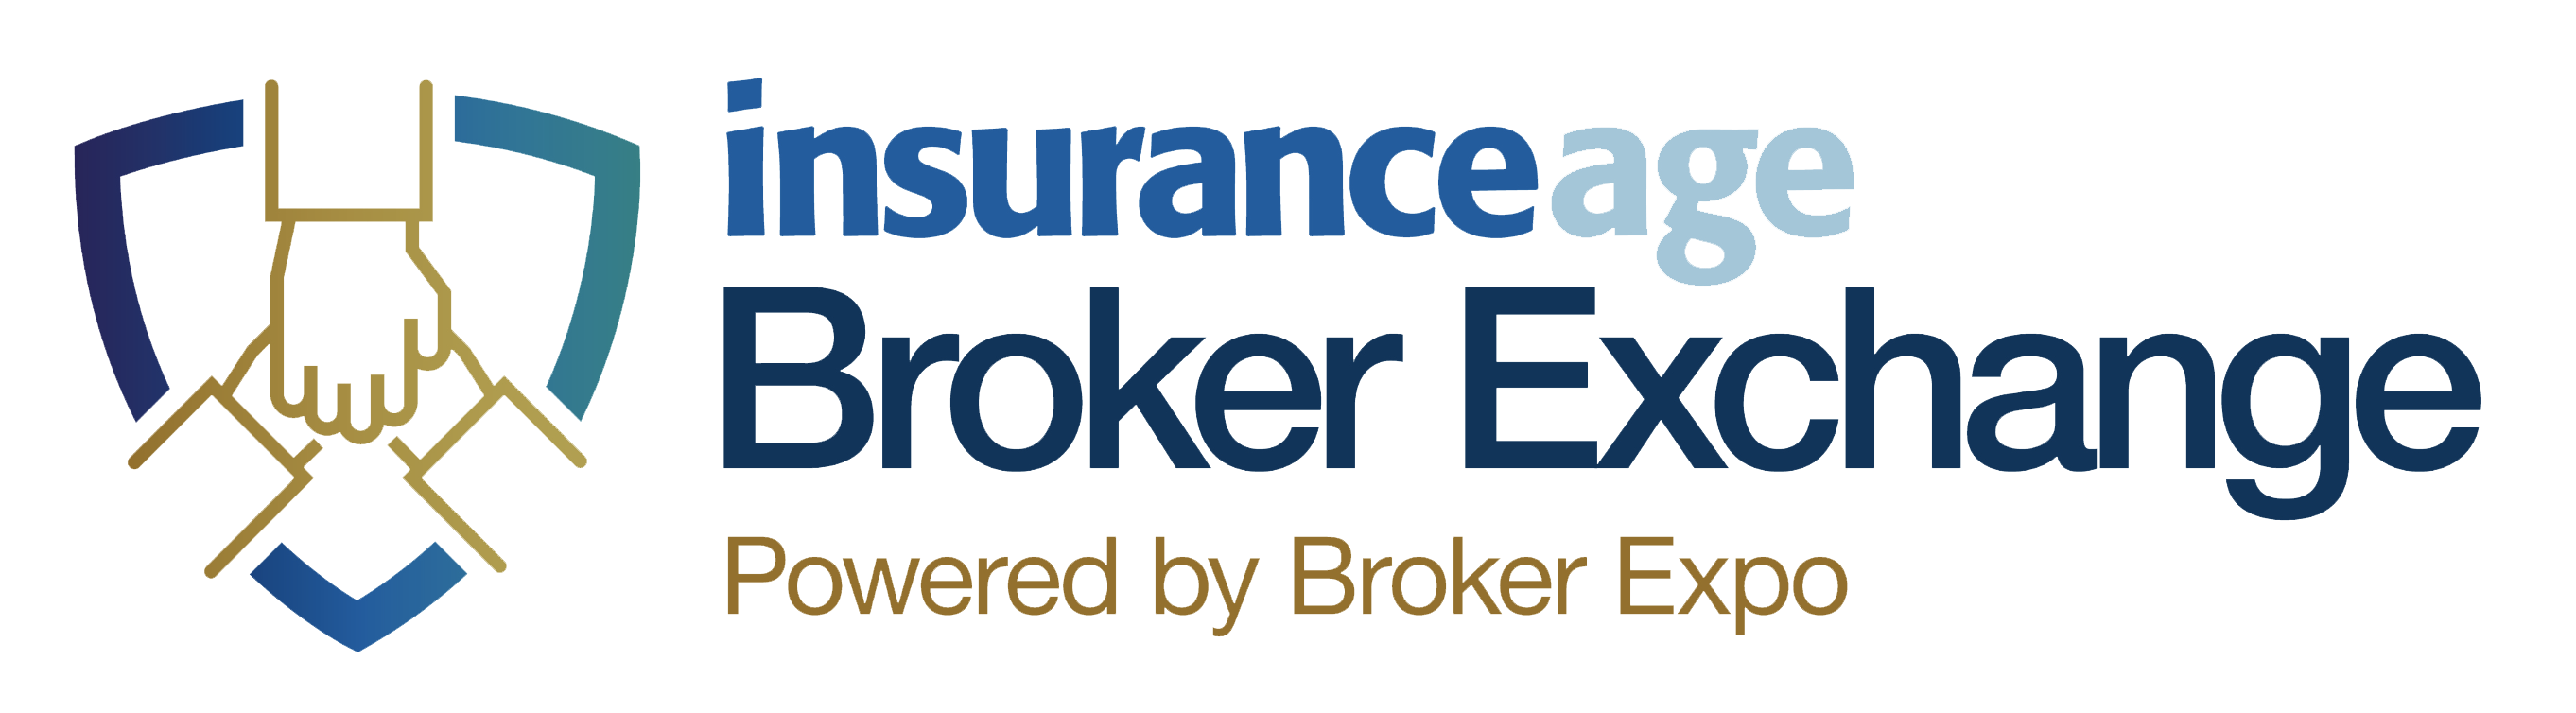 Broker Exchange logo